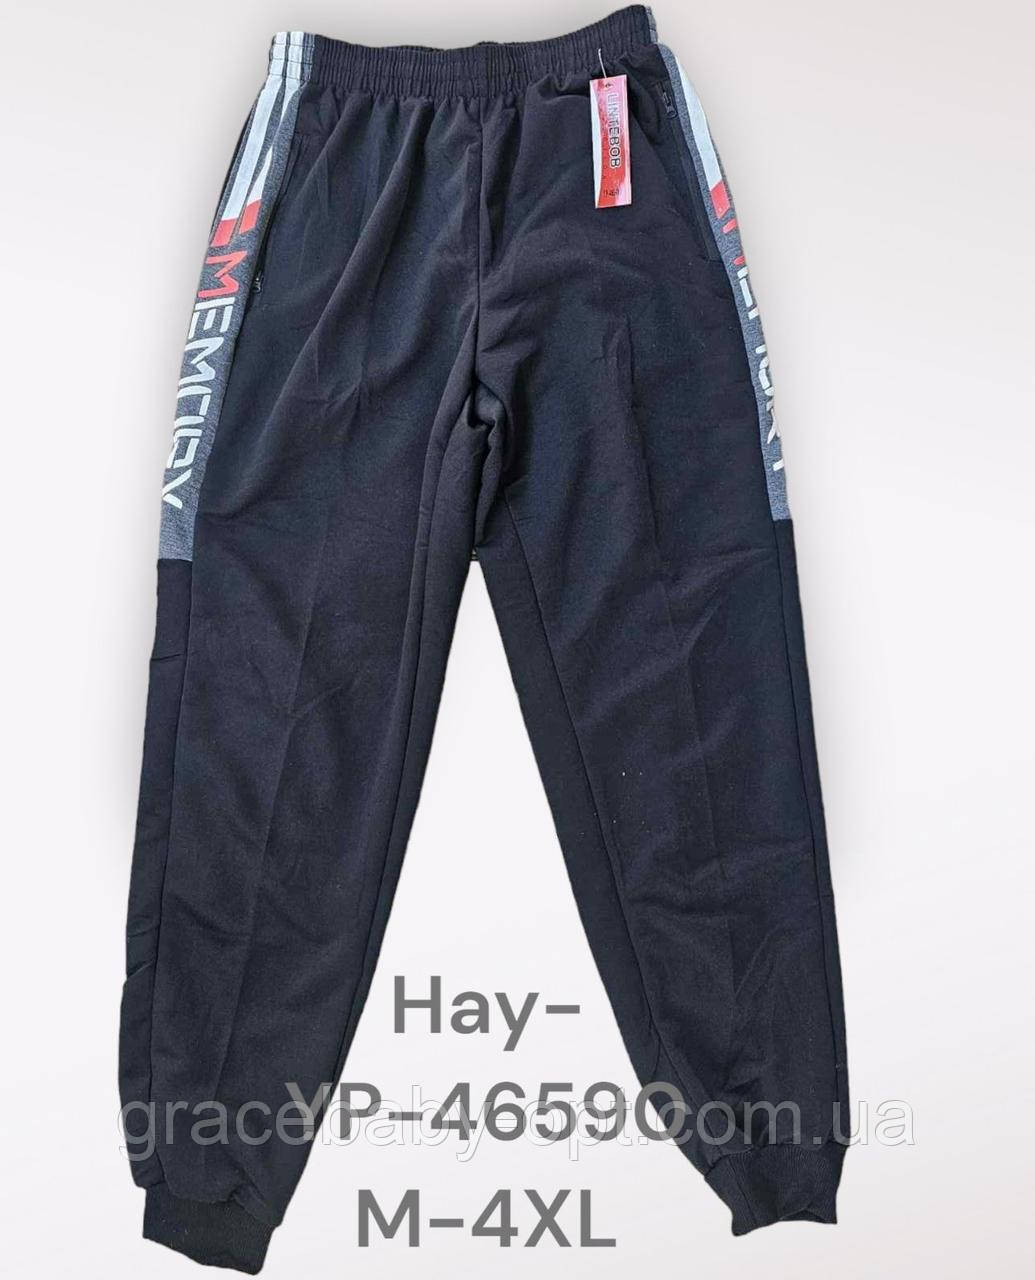 Спортивні штани чоловічі оптом, M-4XL рр, № Hay-Y46590